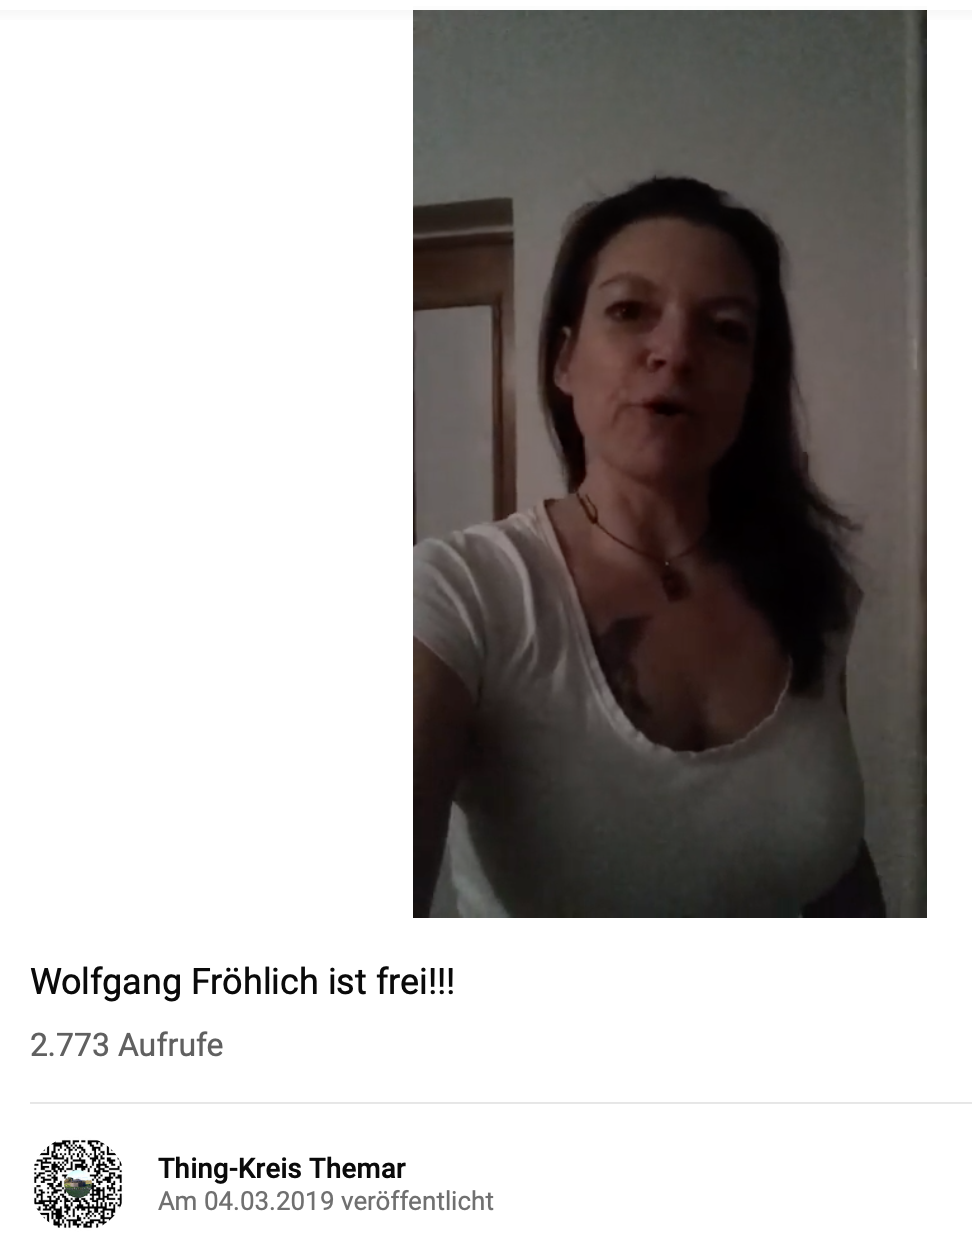 Videobotschaft "Thing-Kreis Themar" zu Fröhlichs Freilassung